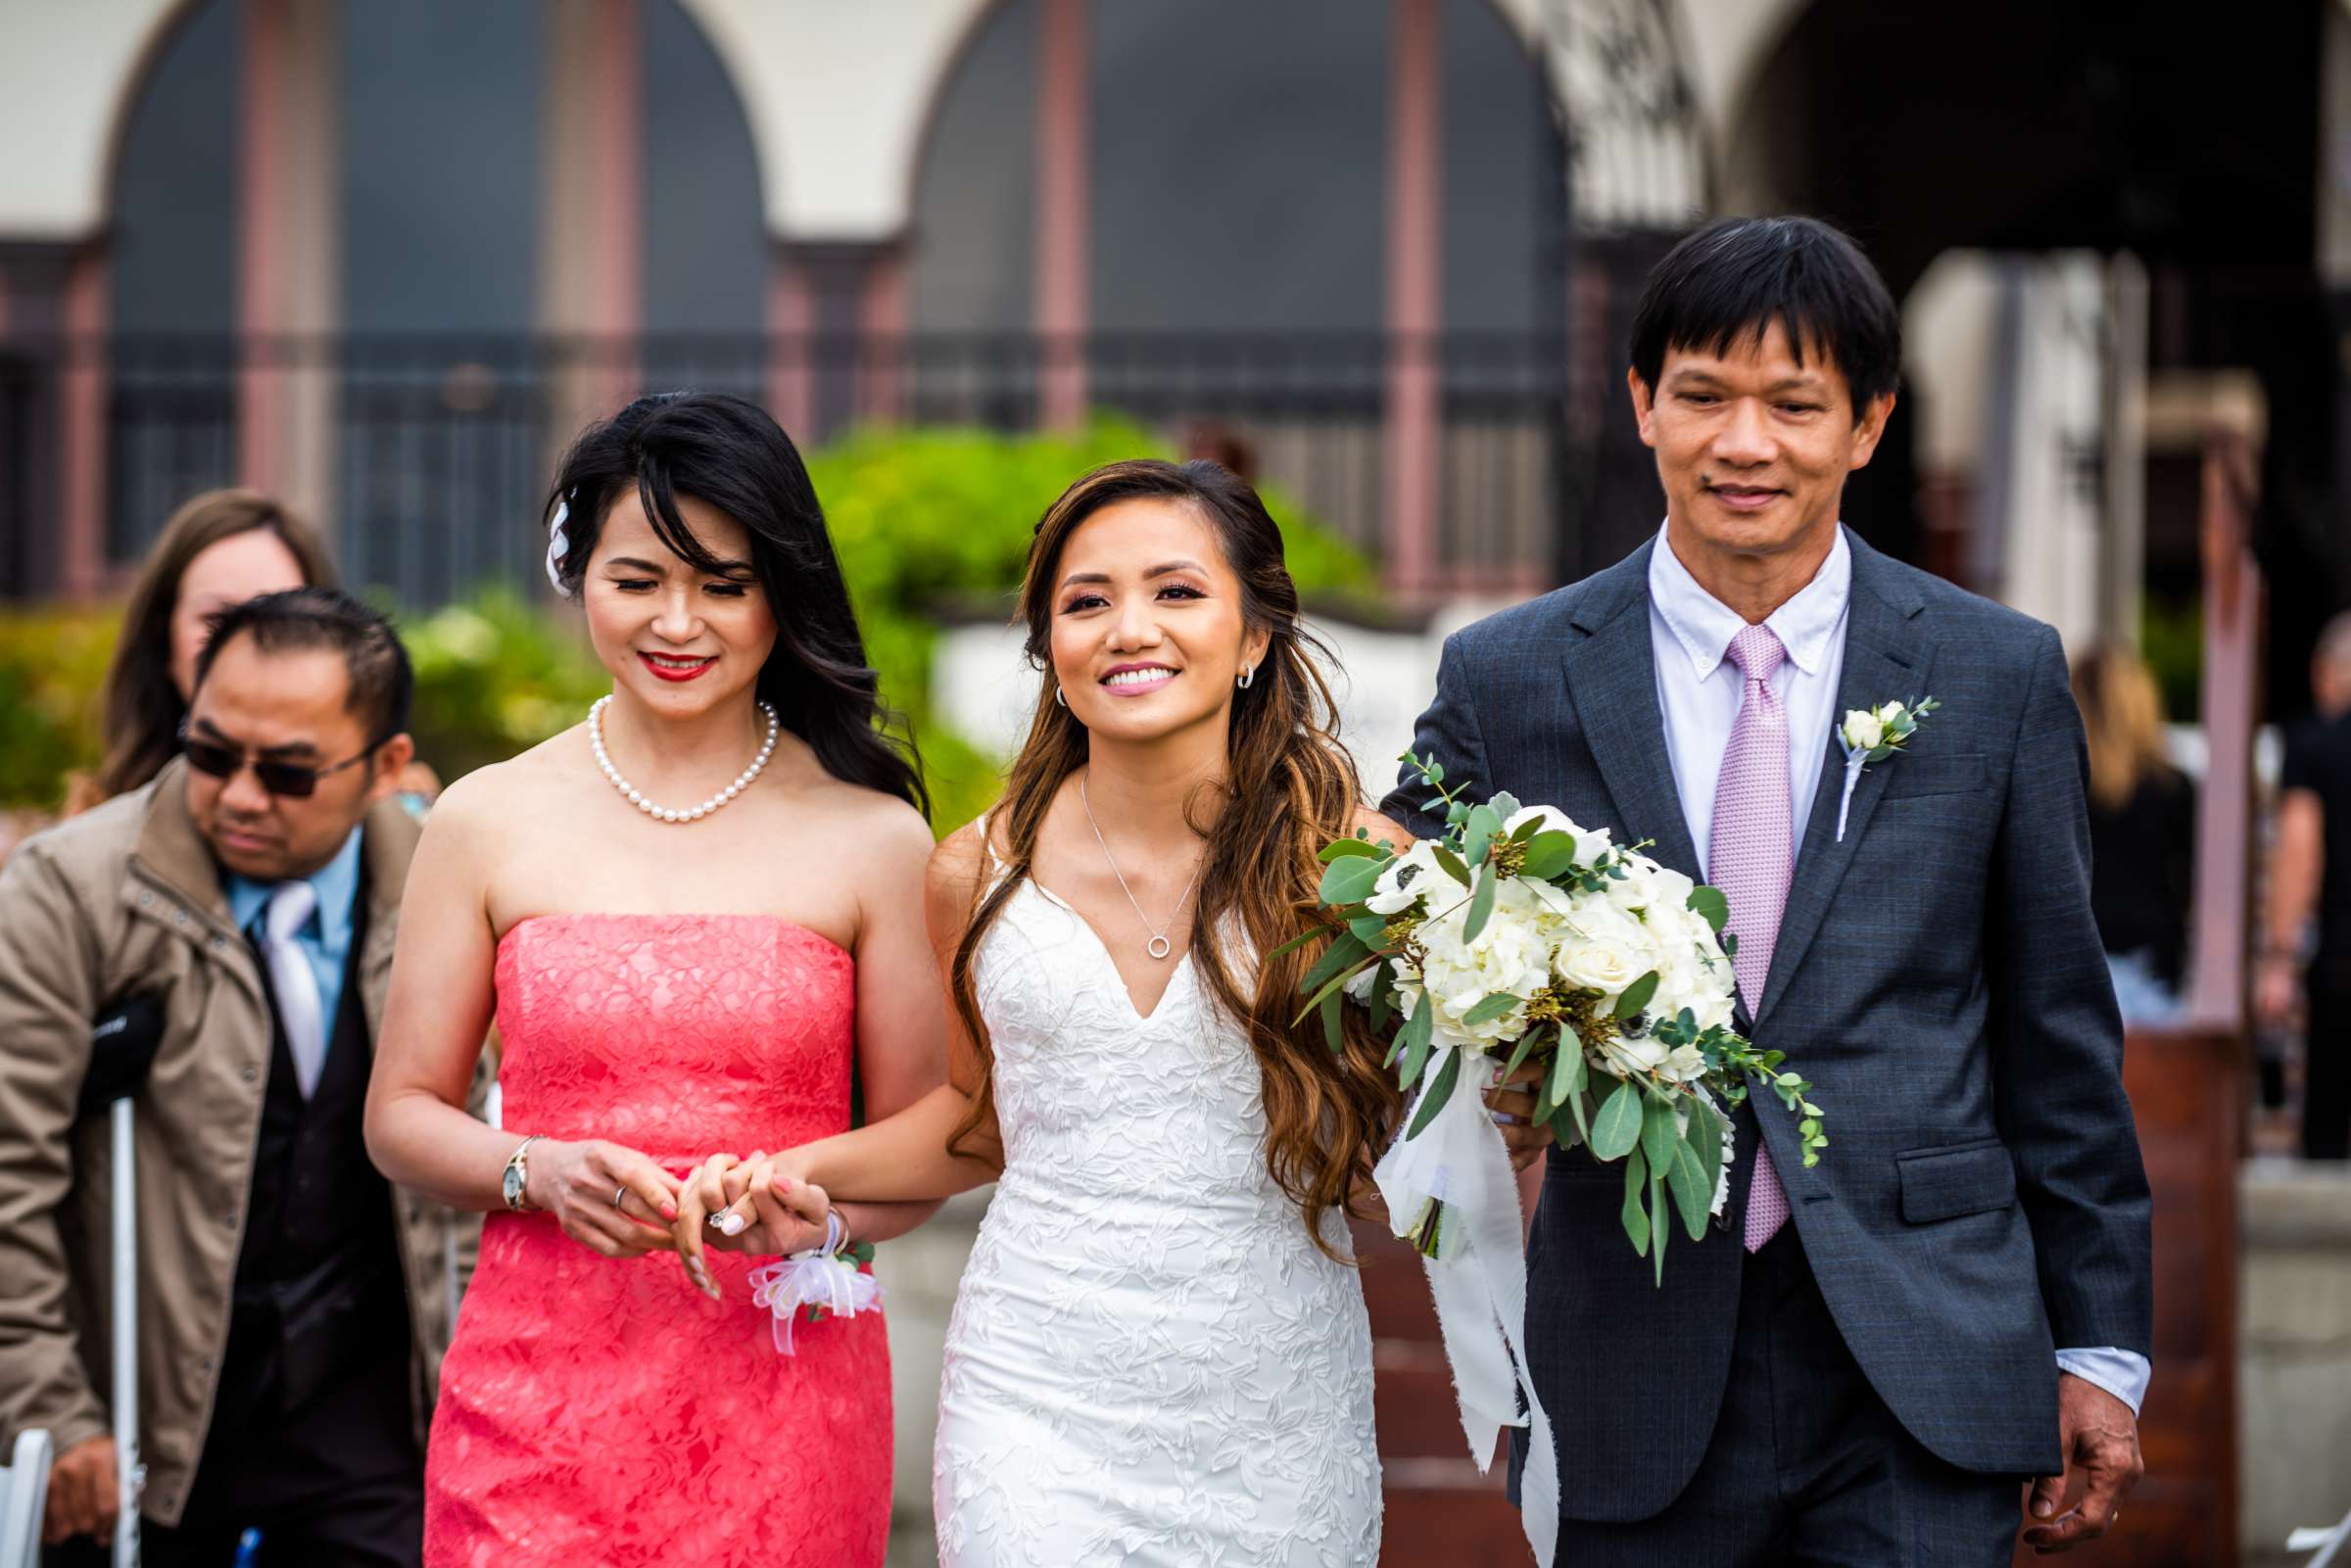 La Jolla Shores Hotel Wedding, Kim and Evan Wedding Photo #12 by True Photography